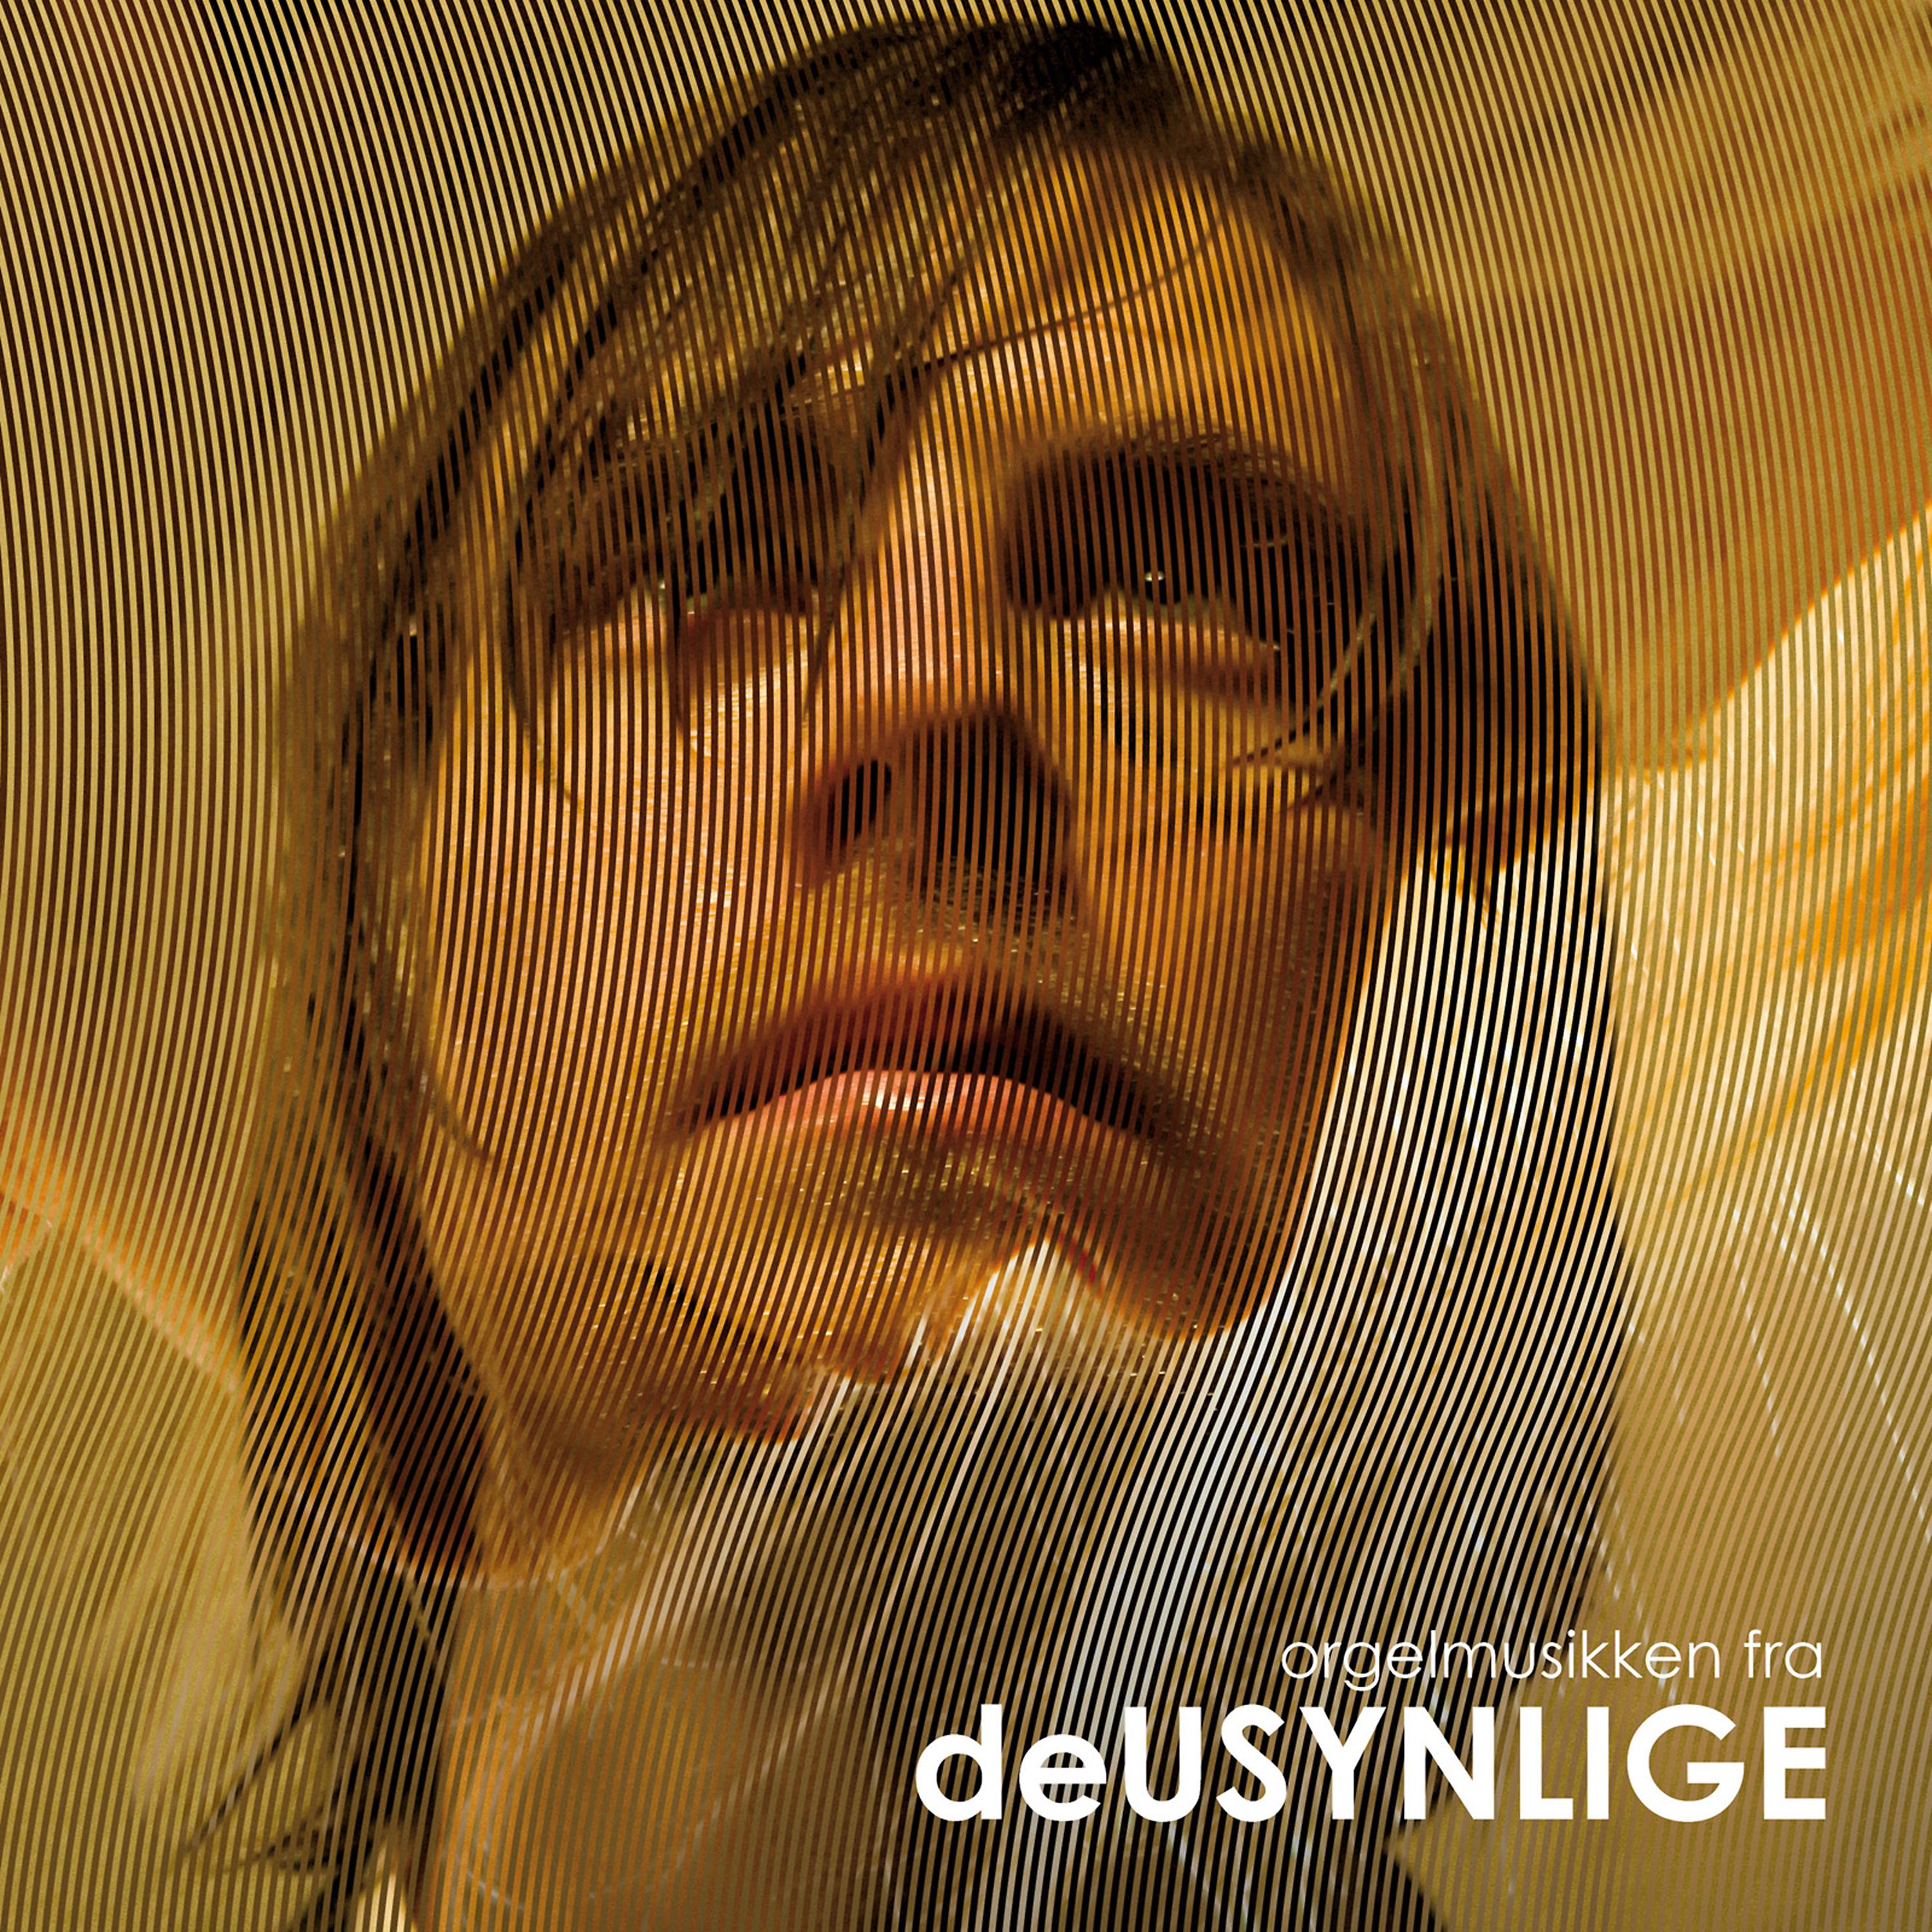 Постер альбома Orgelmusikken Fra Deusynlige (Erik Poppe) (Troubled Water Original Motion Picture Soundtrack)